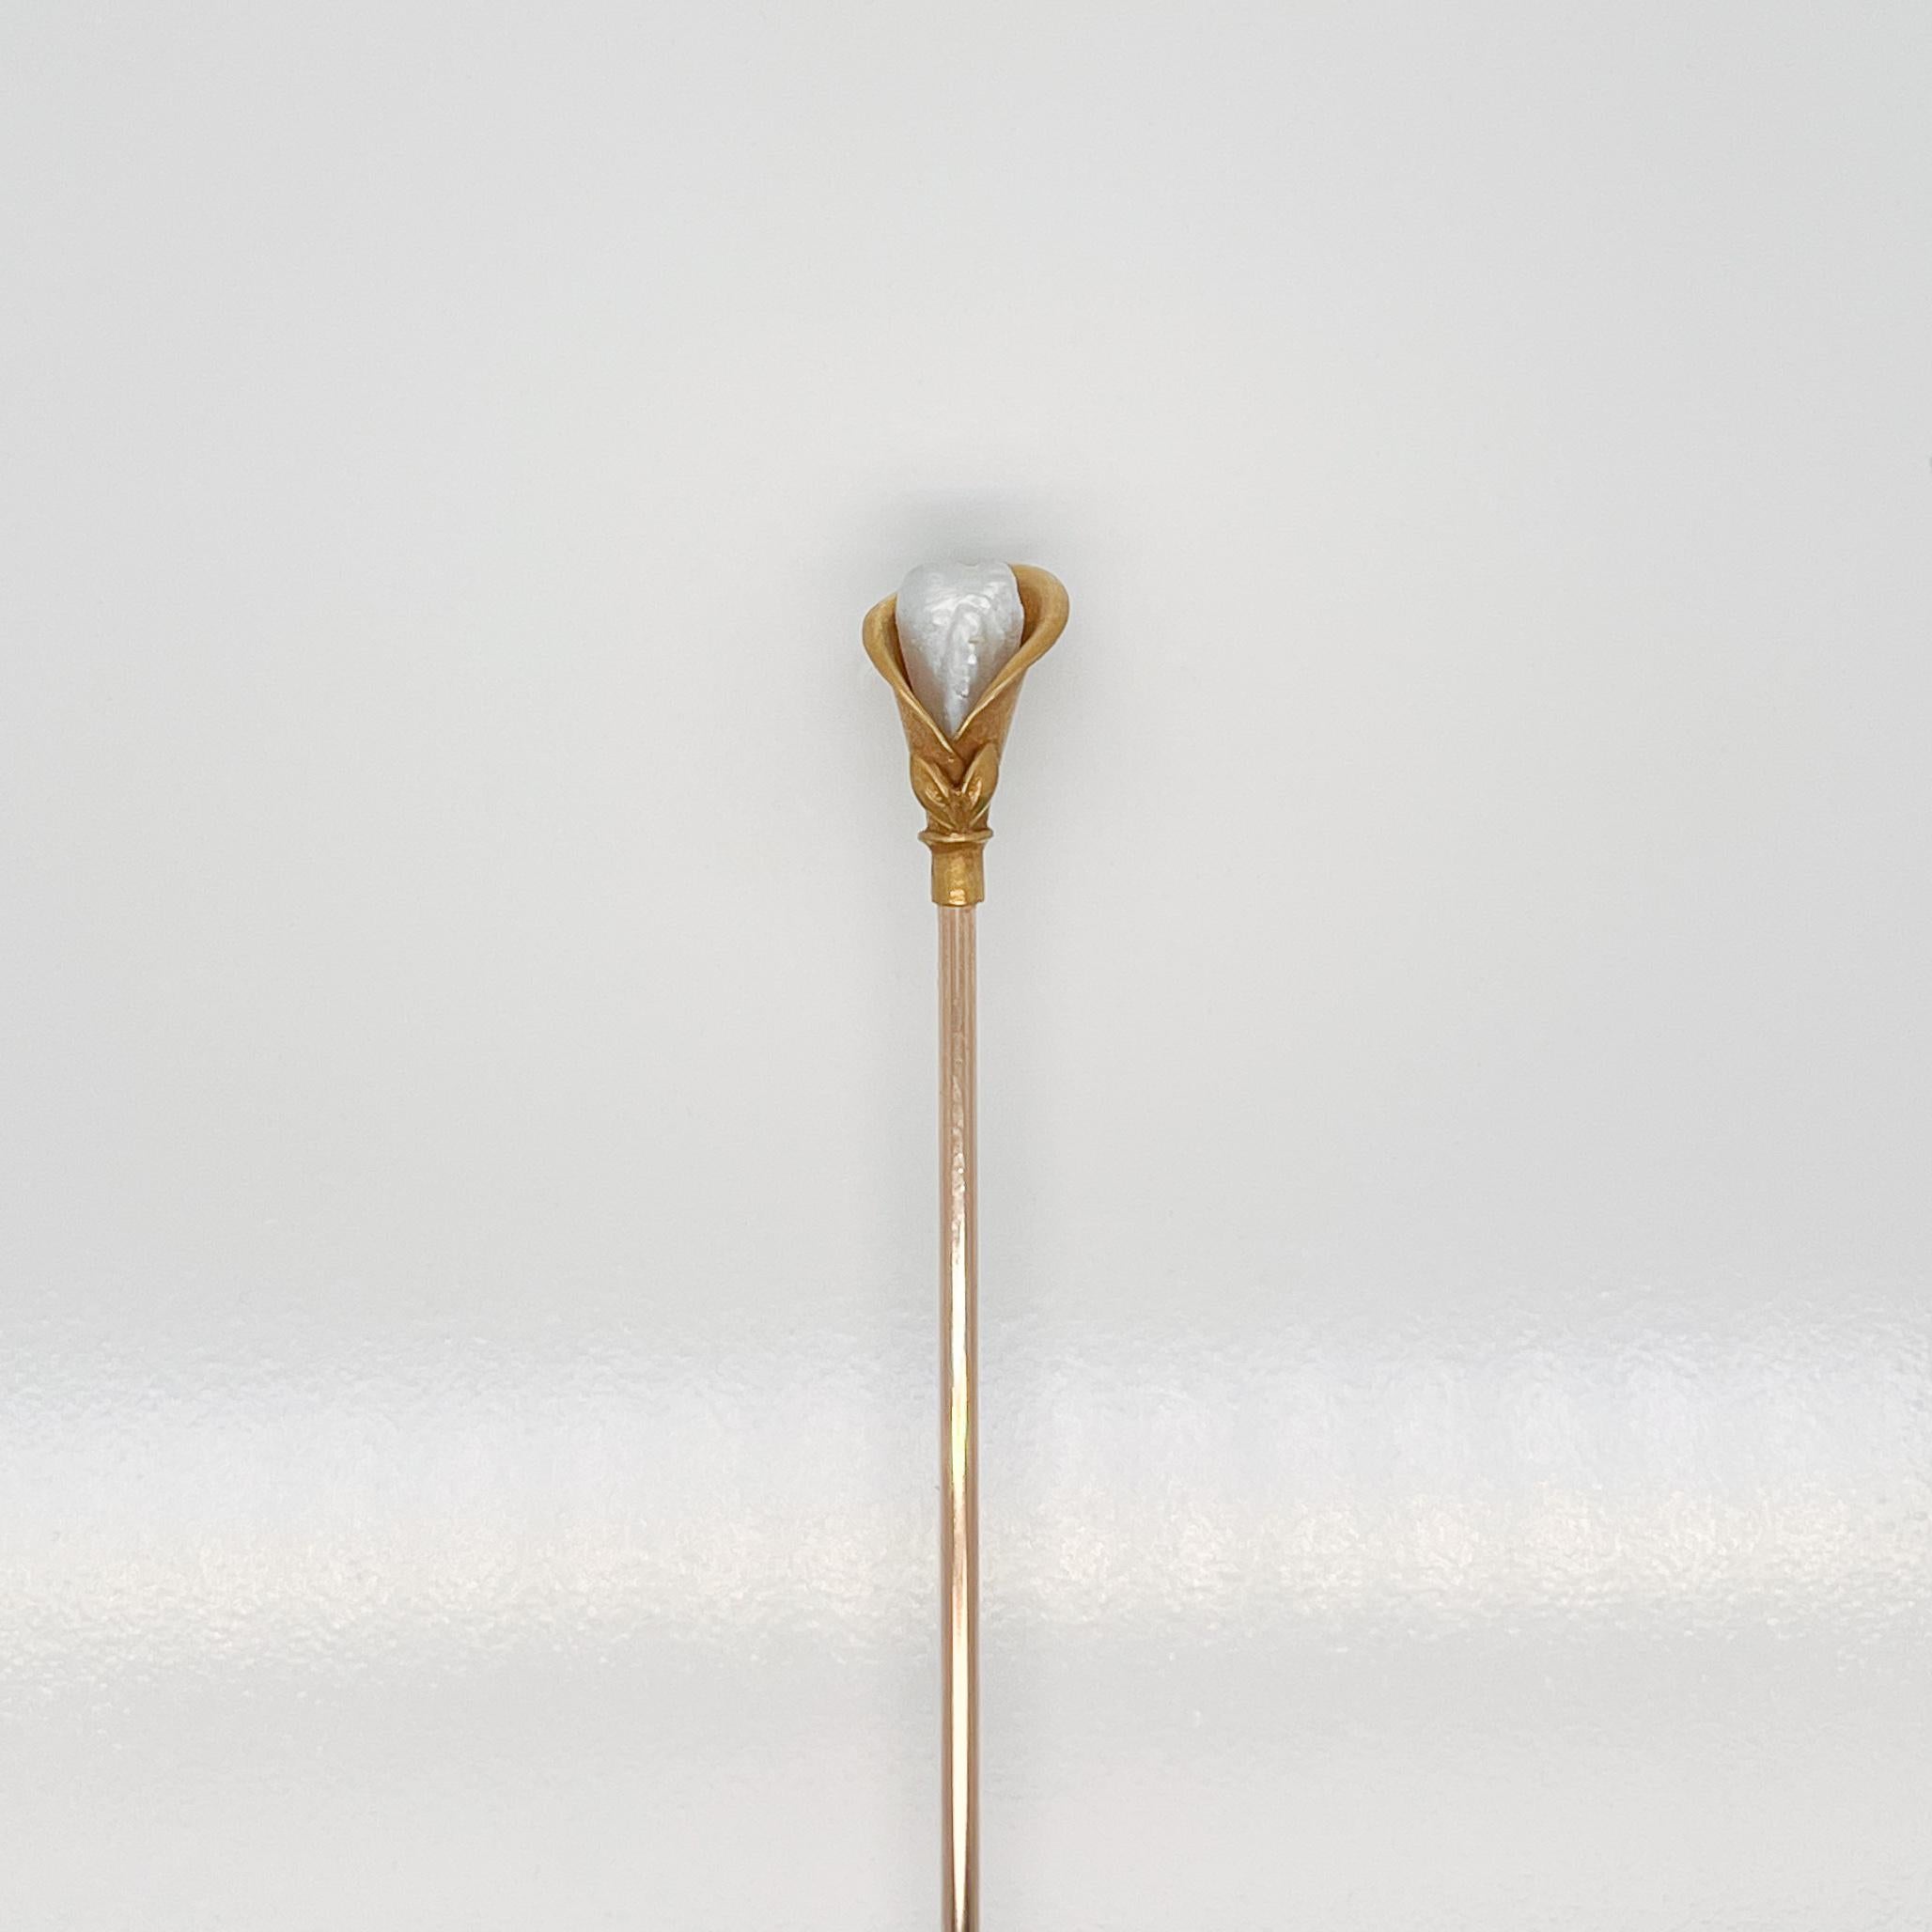 Eine sehr feine 14k Gold (und Gold gefüllt) Peace Lily Hutnadel (oder Stickpin / Reversnadel) mit einer Perle.

Mit einem 14K Gold figuralen Peace Lily oben mit Keshi Perle in der Mitte und montiert auf einem Gold gefüllt Pin Welle.

Einfach eine